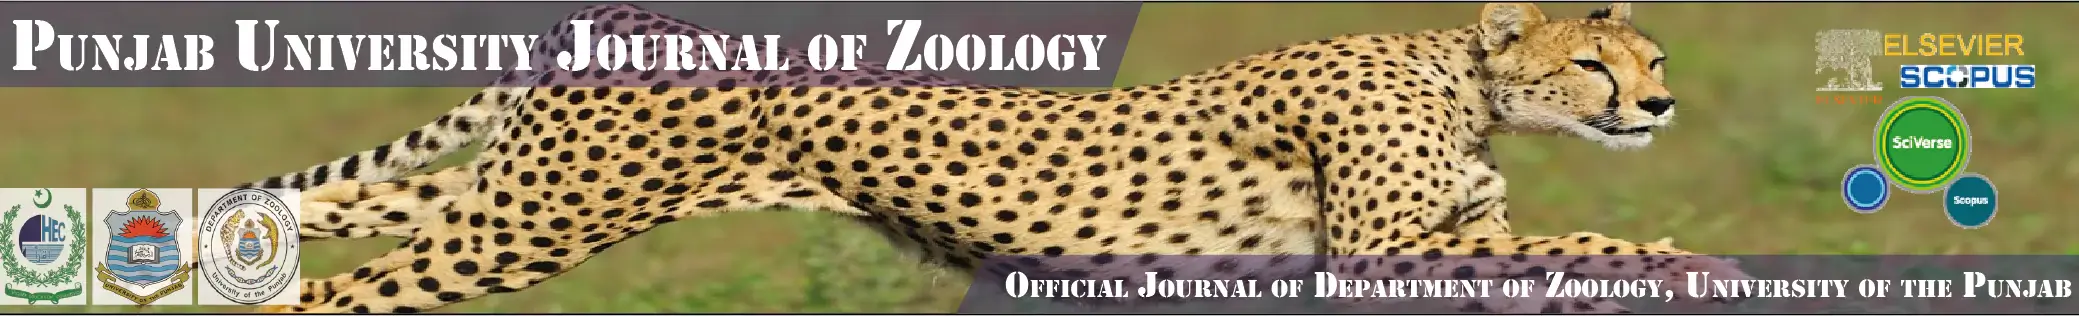 Punjab University Journal of Zoology